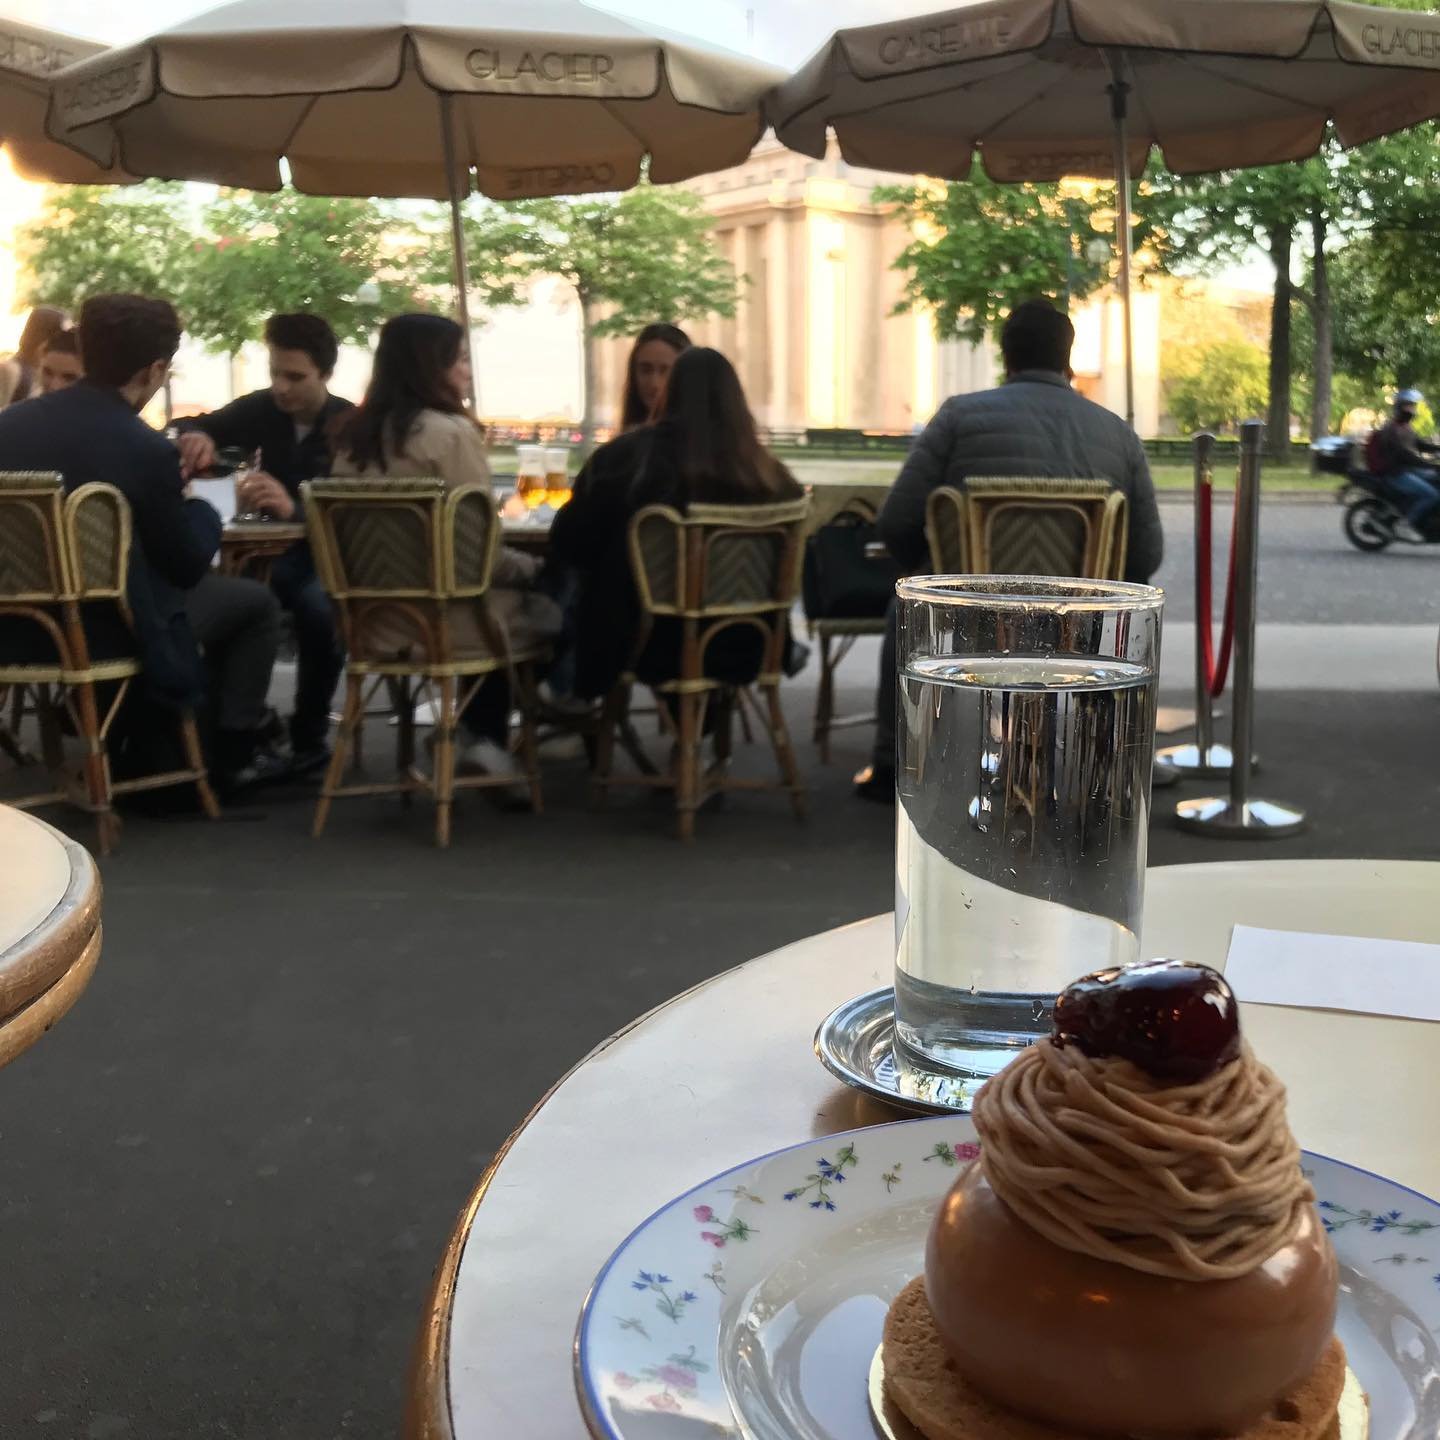 Carette-Pastry-Shop-Paris.jpg